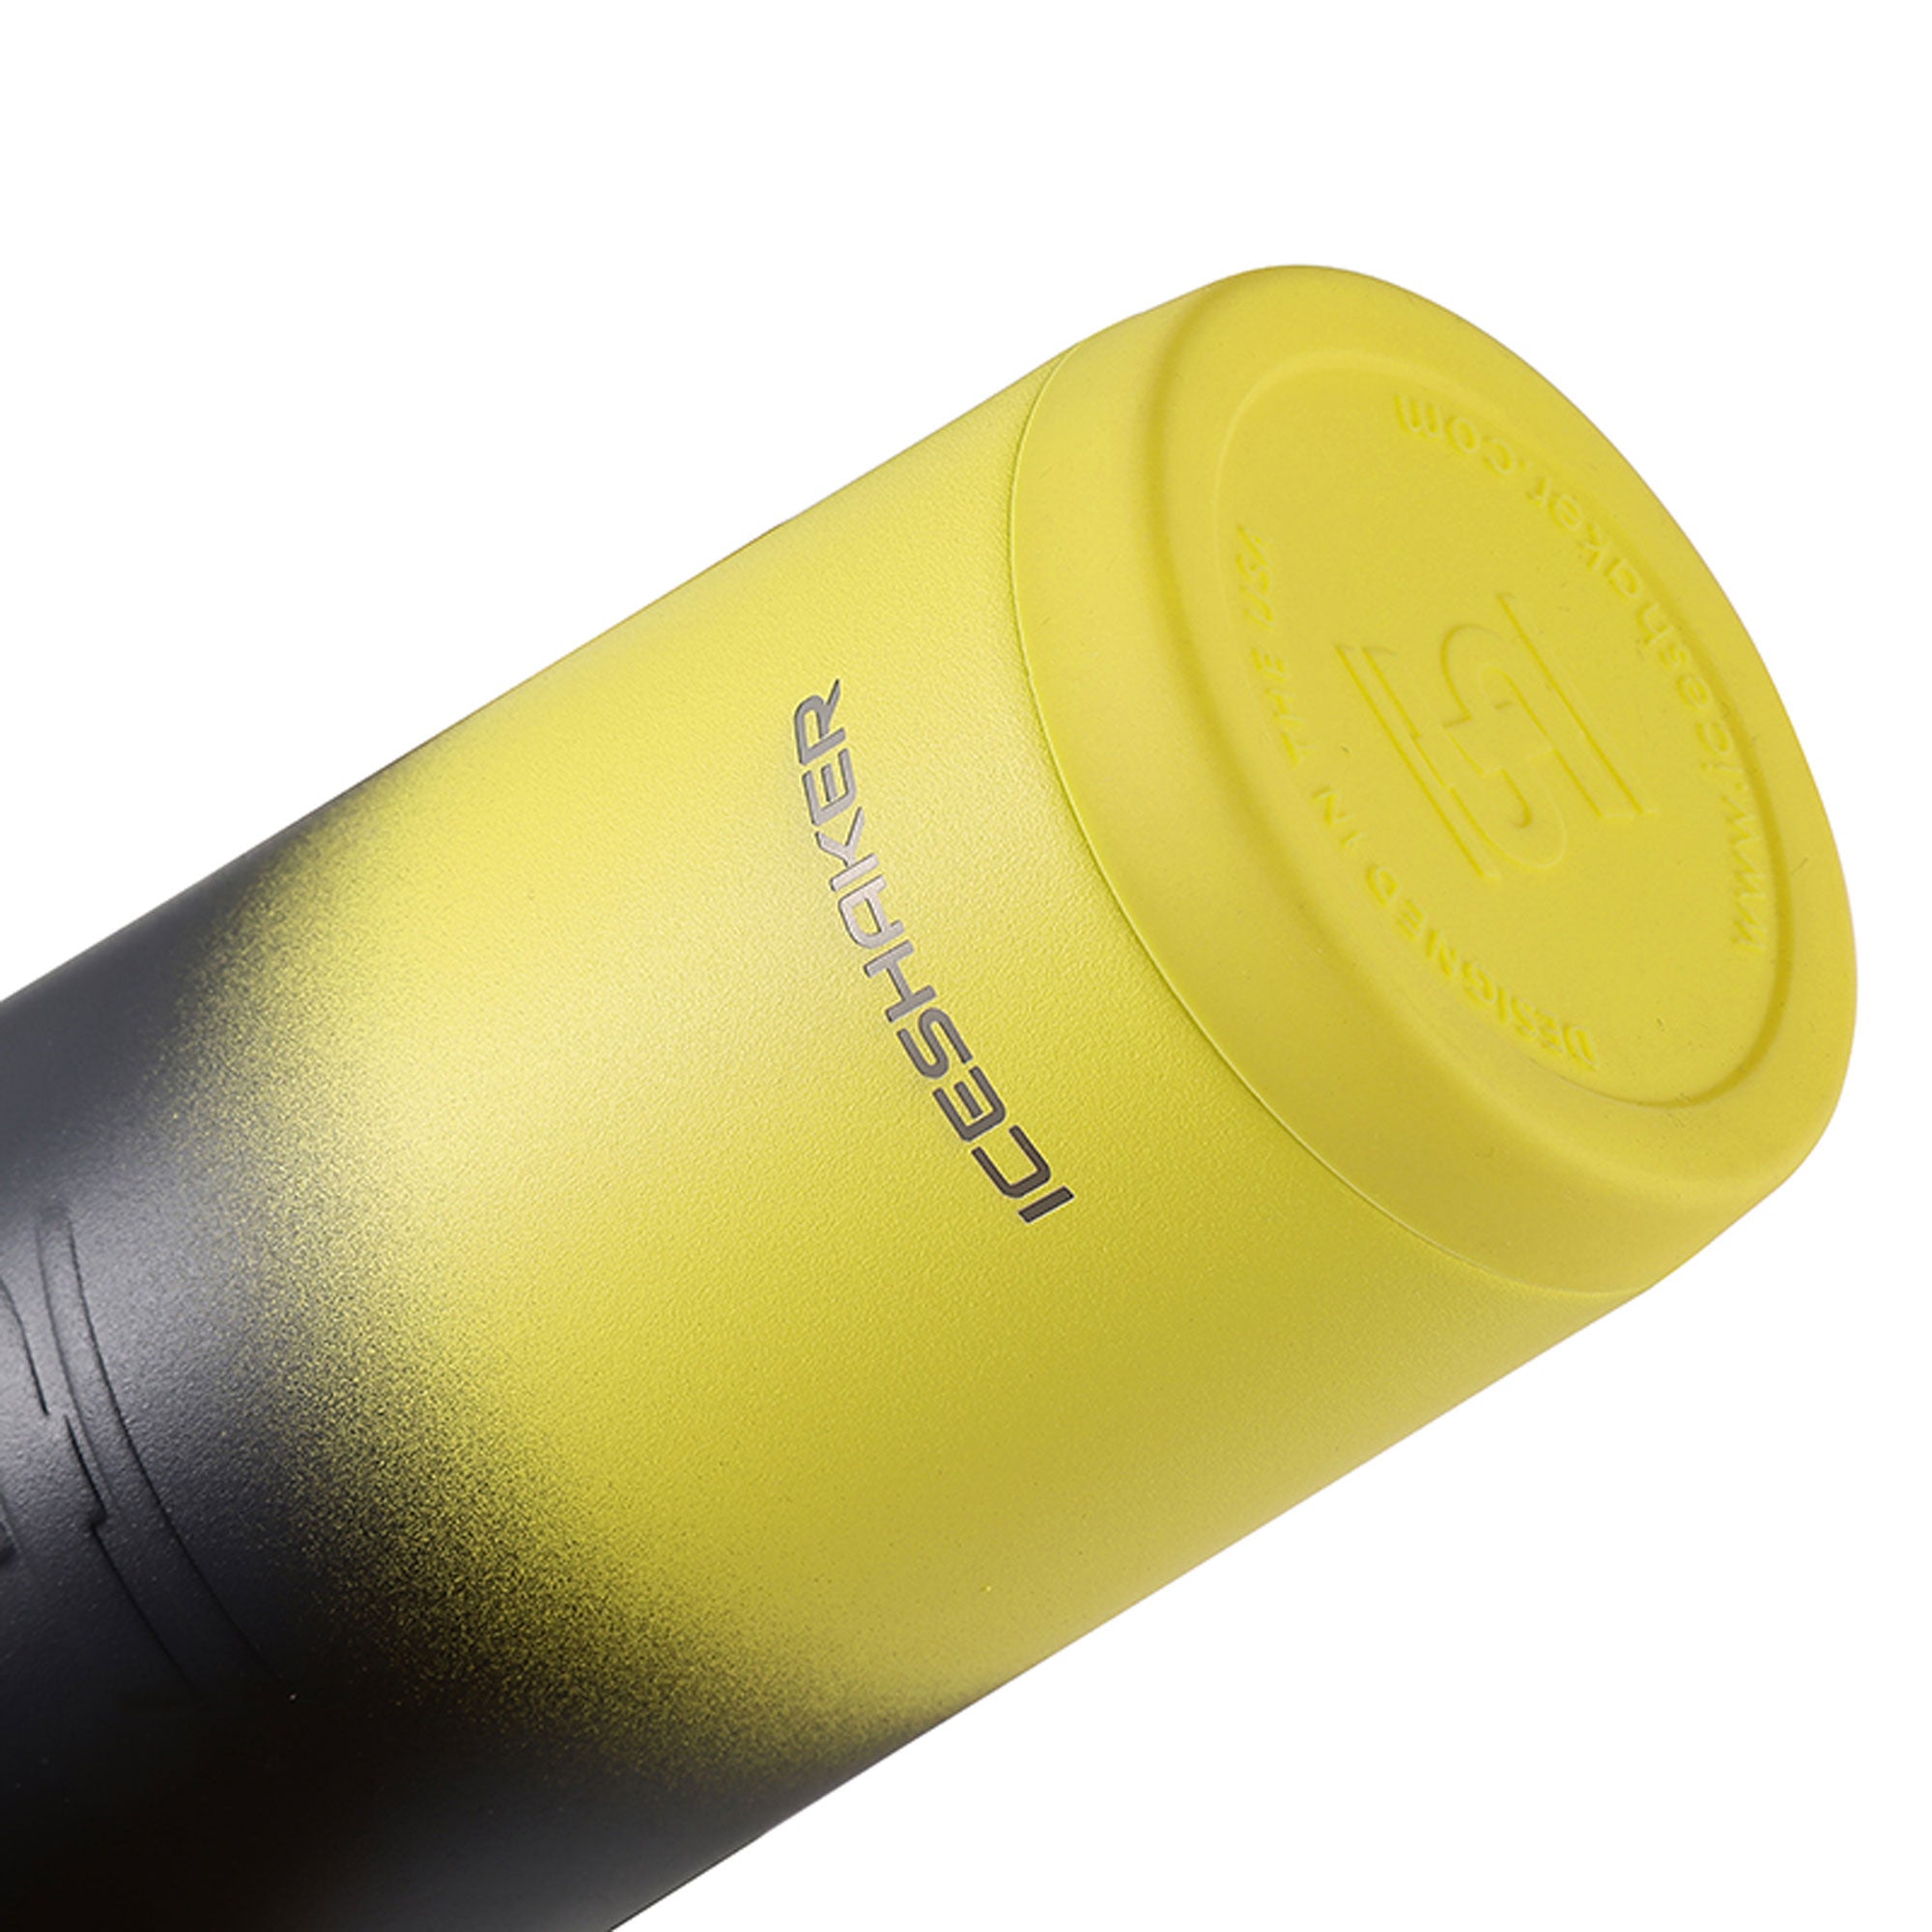 ShakeSphere Cooler Shaker 700mls / Ombre Yellow